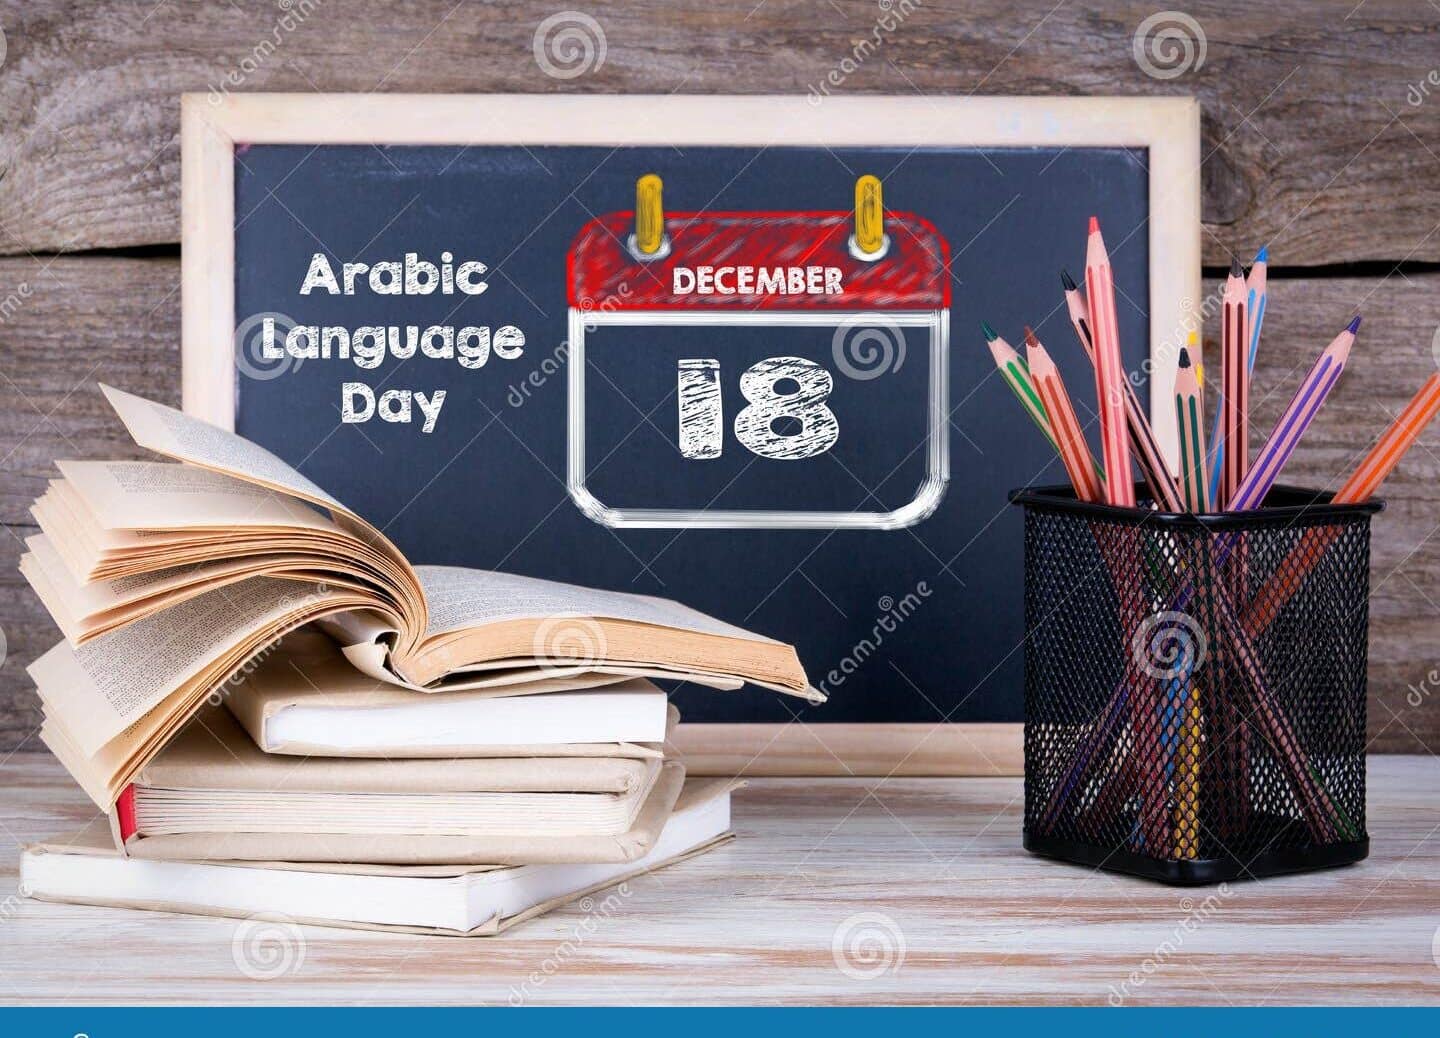 dia mundial de la lengua arabe el dia 18 de diciembre